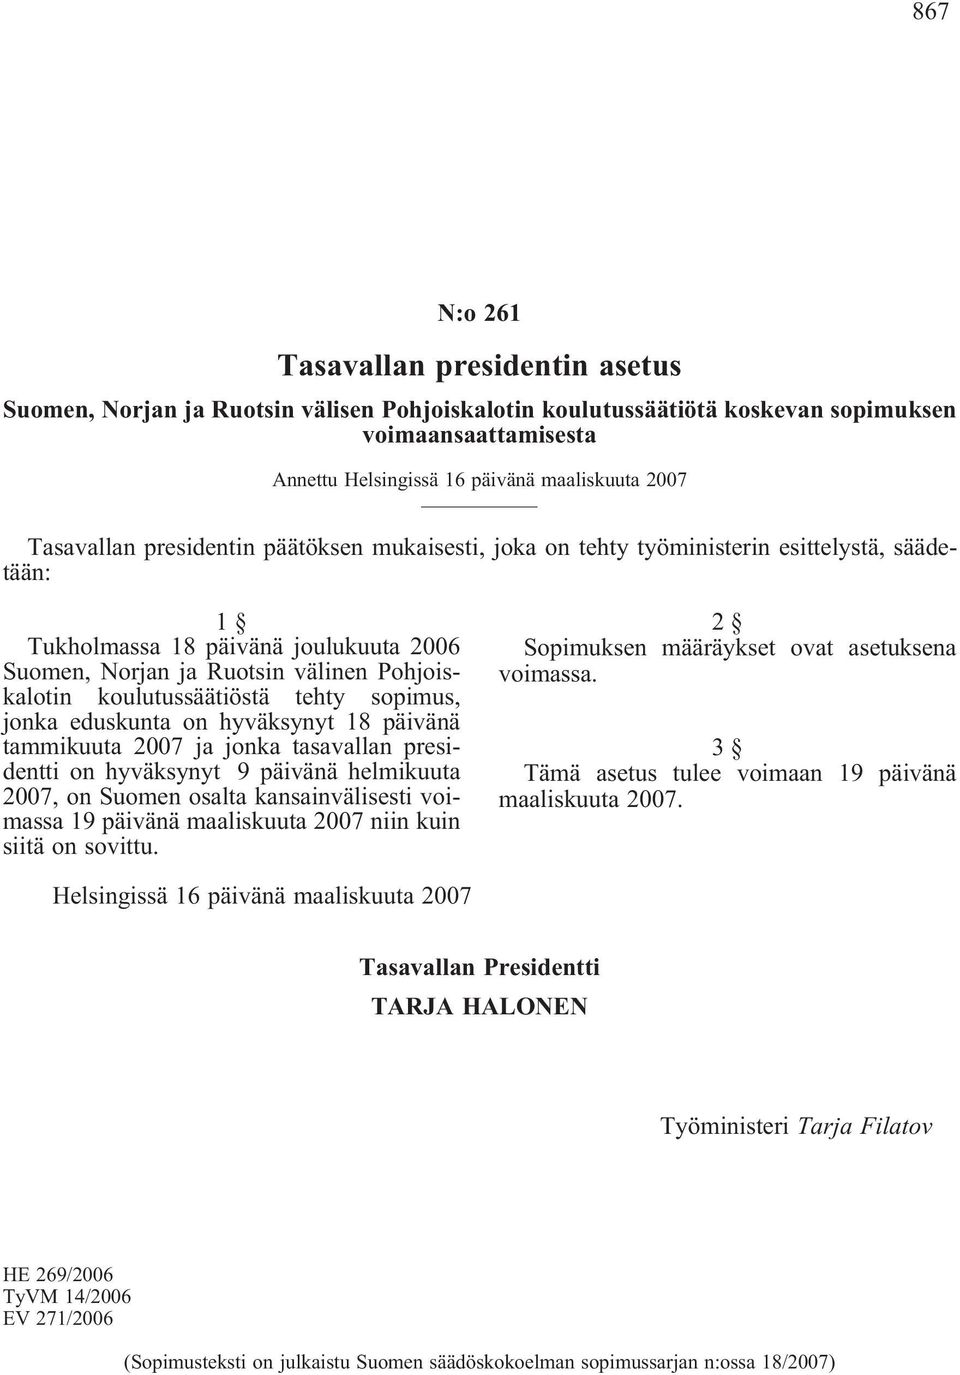 koulutussäätiöstä tehty sopimus, jonka eduskunta on hyväksynyt 18 päivänä tammikuuta 2007 ja jonka tasavallan presidentti on hyväksynyt 9 päivänä helmikuuta 2007, on Suomen osalta kansainvälisesti